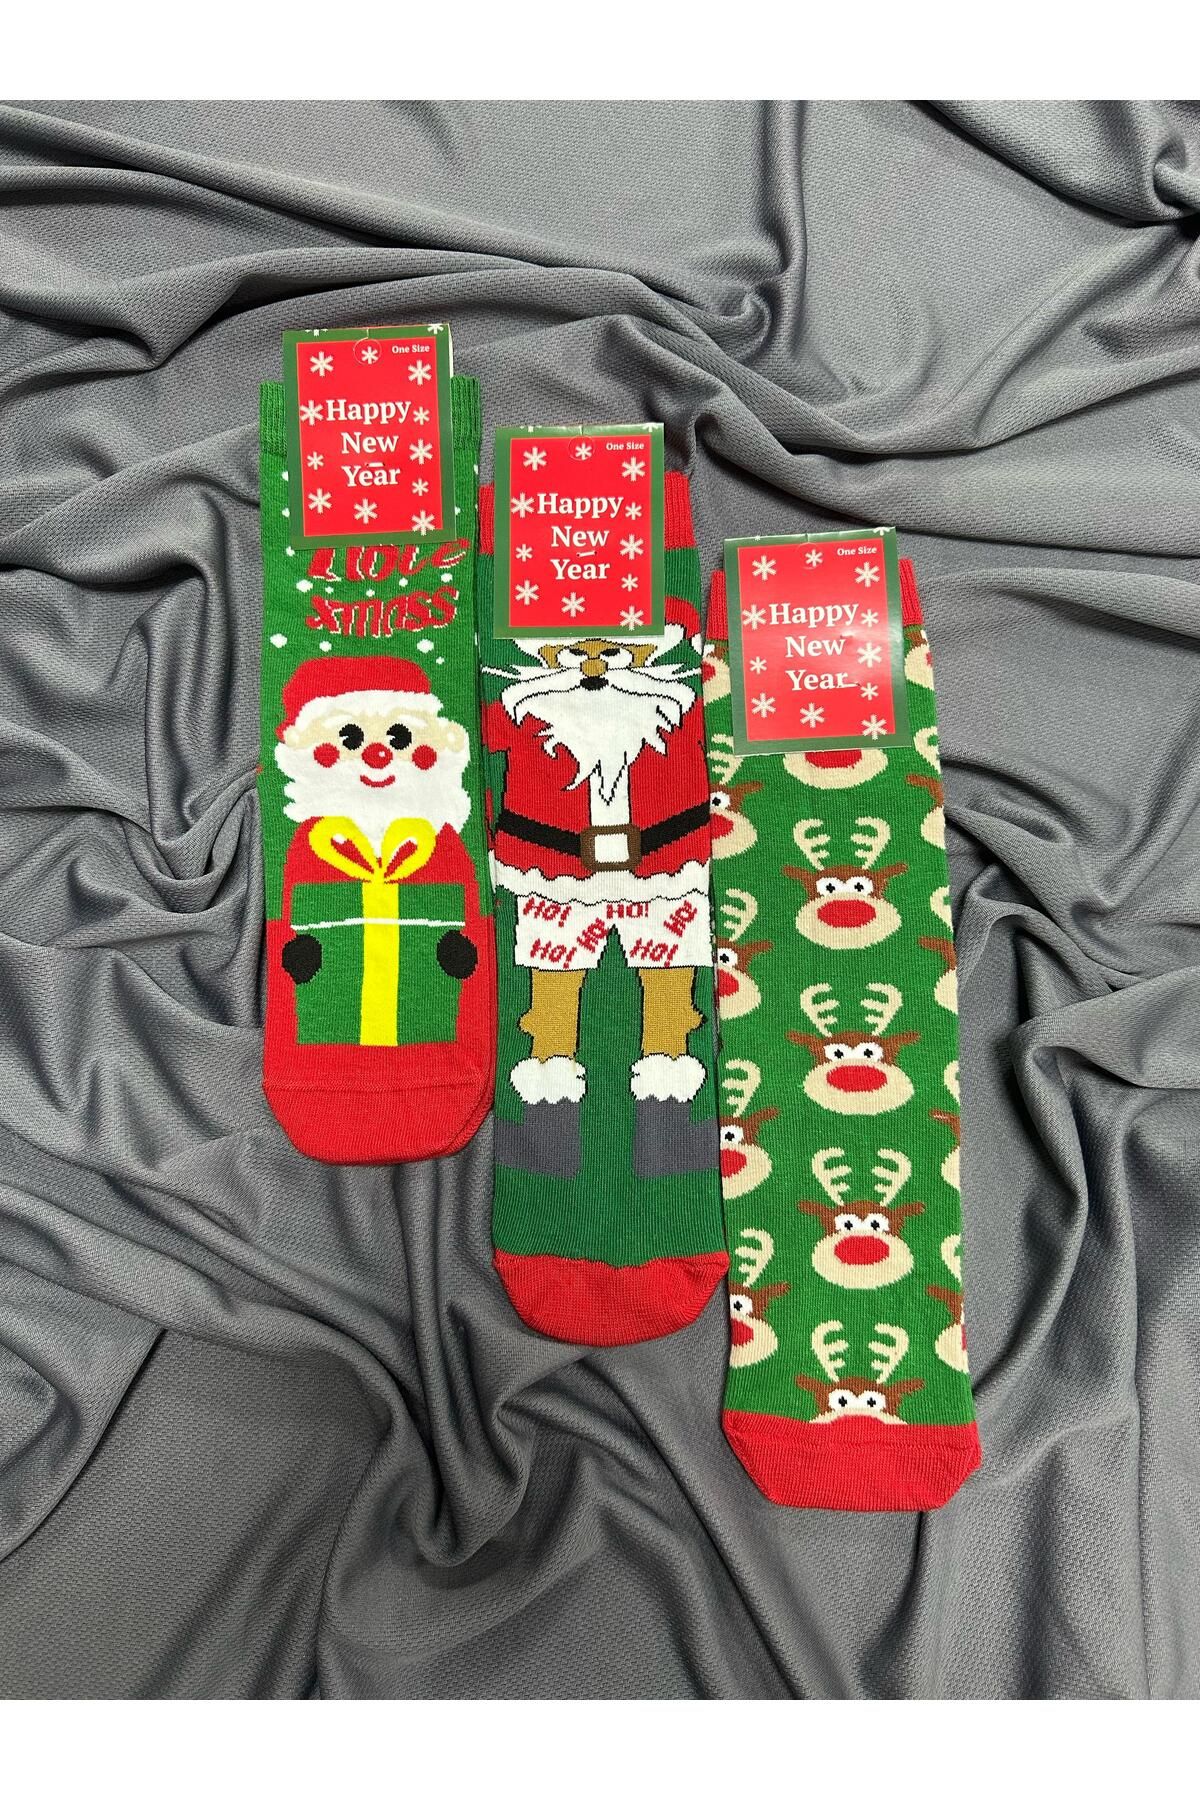 KRC & GLOBAL TEKSTİL Yılbaşı - Noel - Christmas Temalı Unisex Çorapları 3'lü